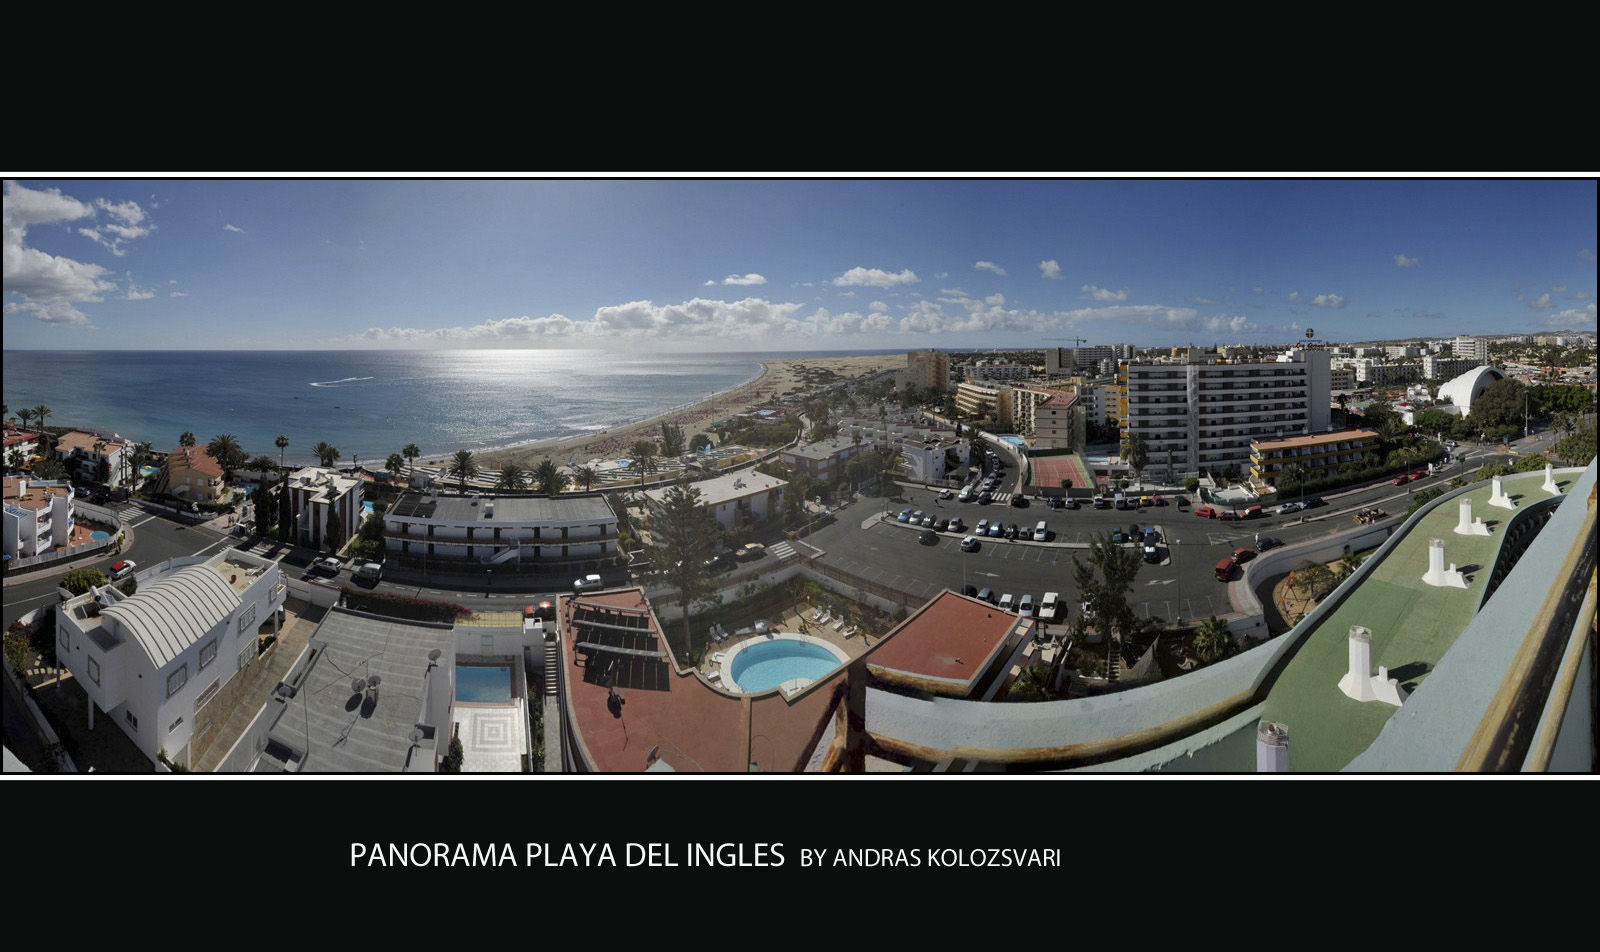 Panorama, Playa del Ingles